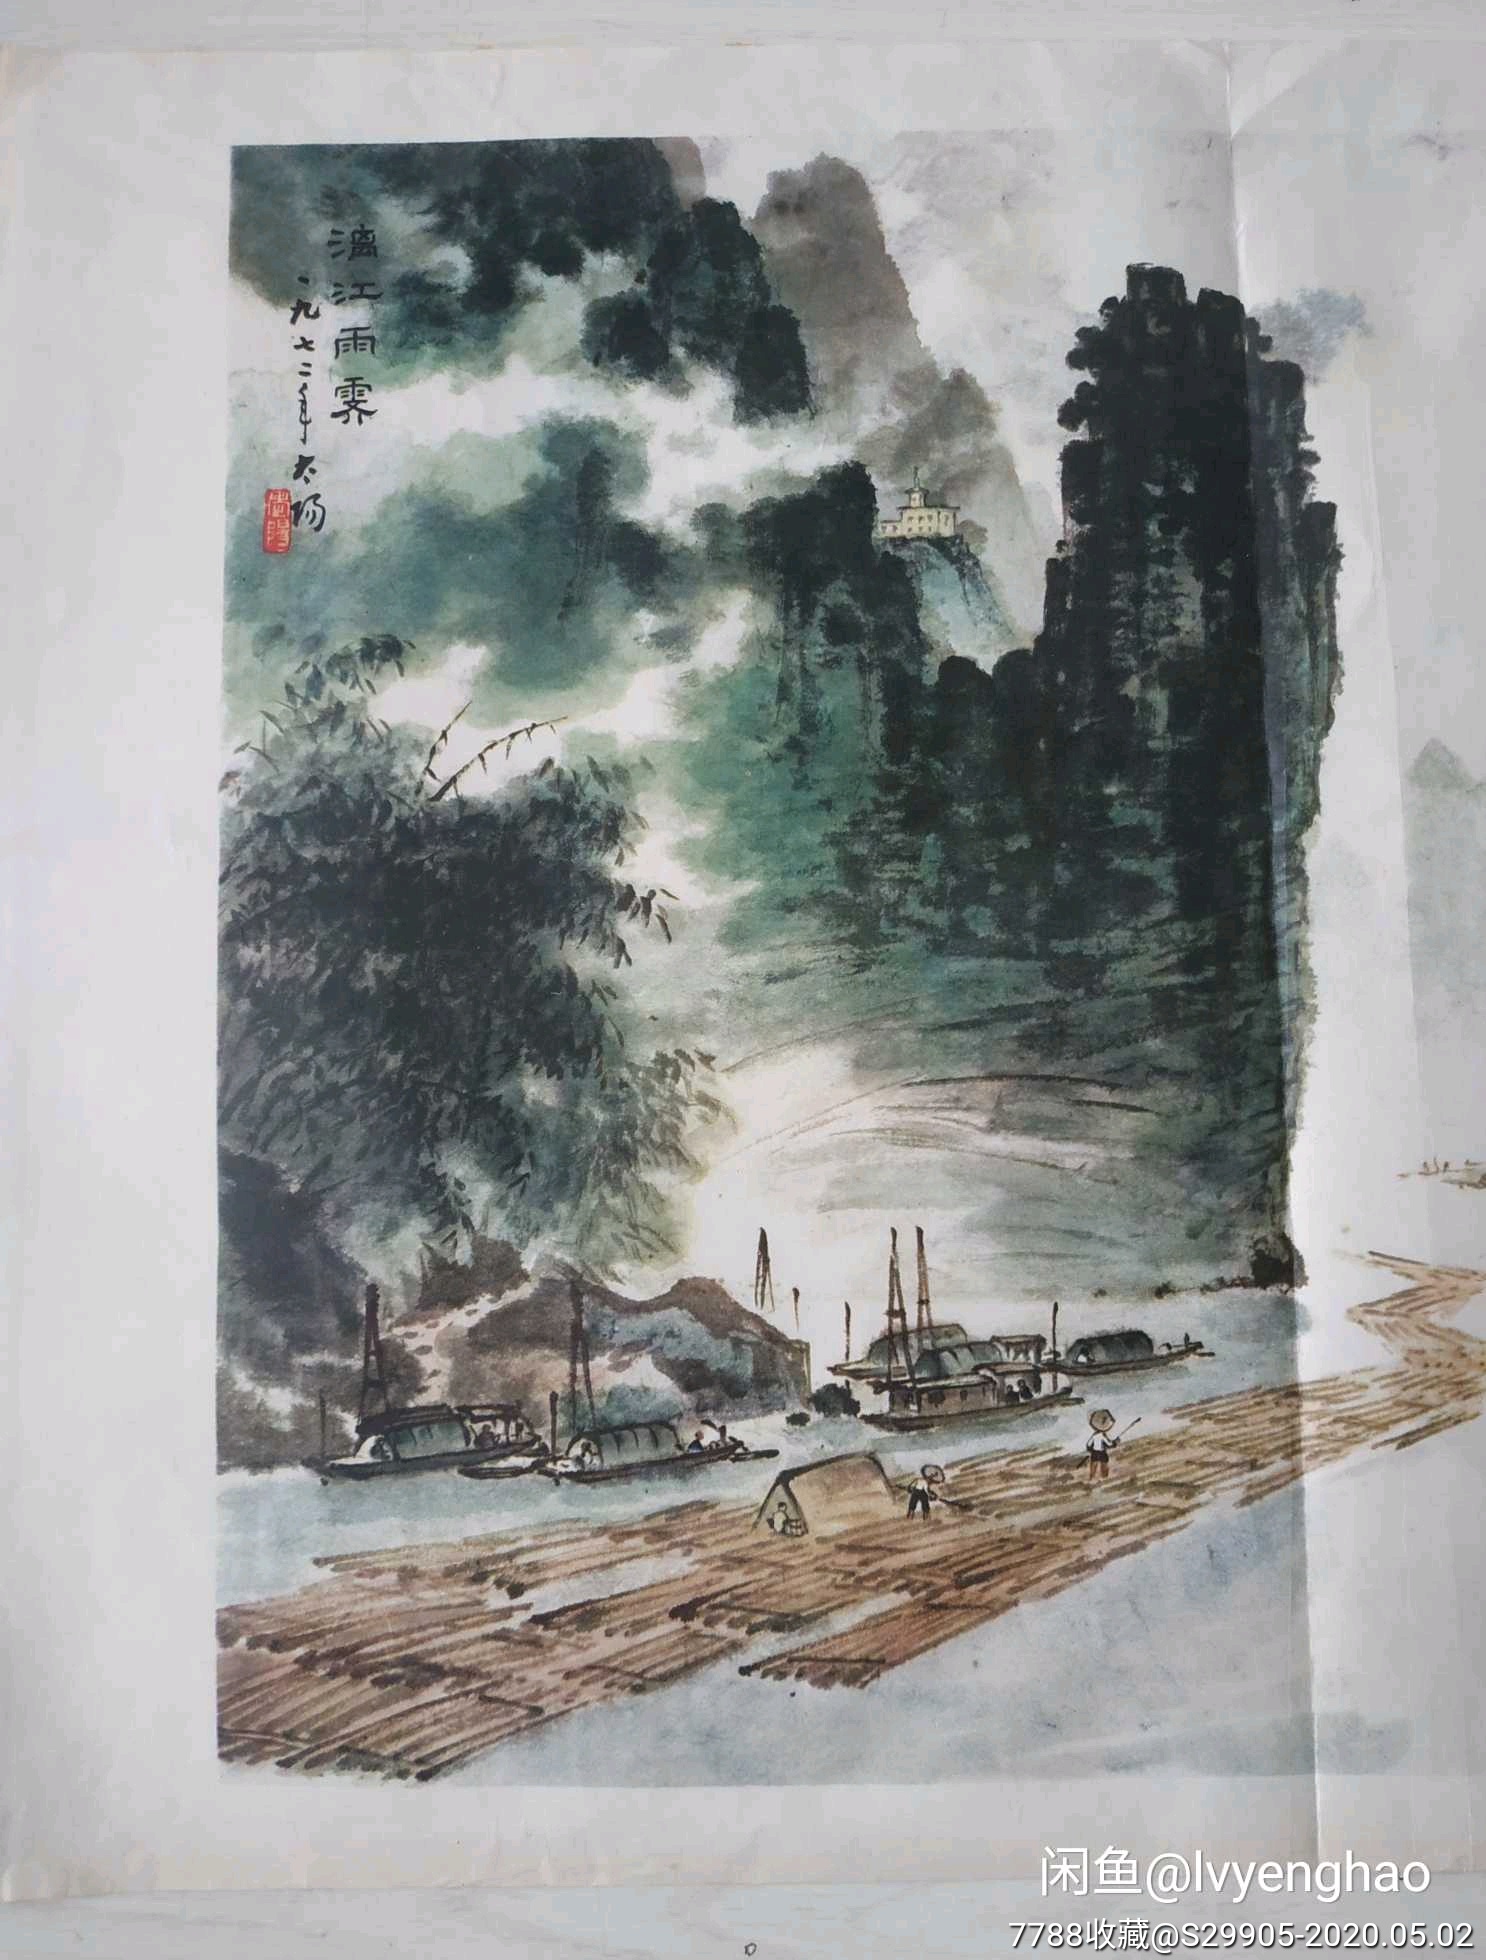 文革时期:名家阳太阳《漓江雨霁》宣传画